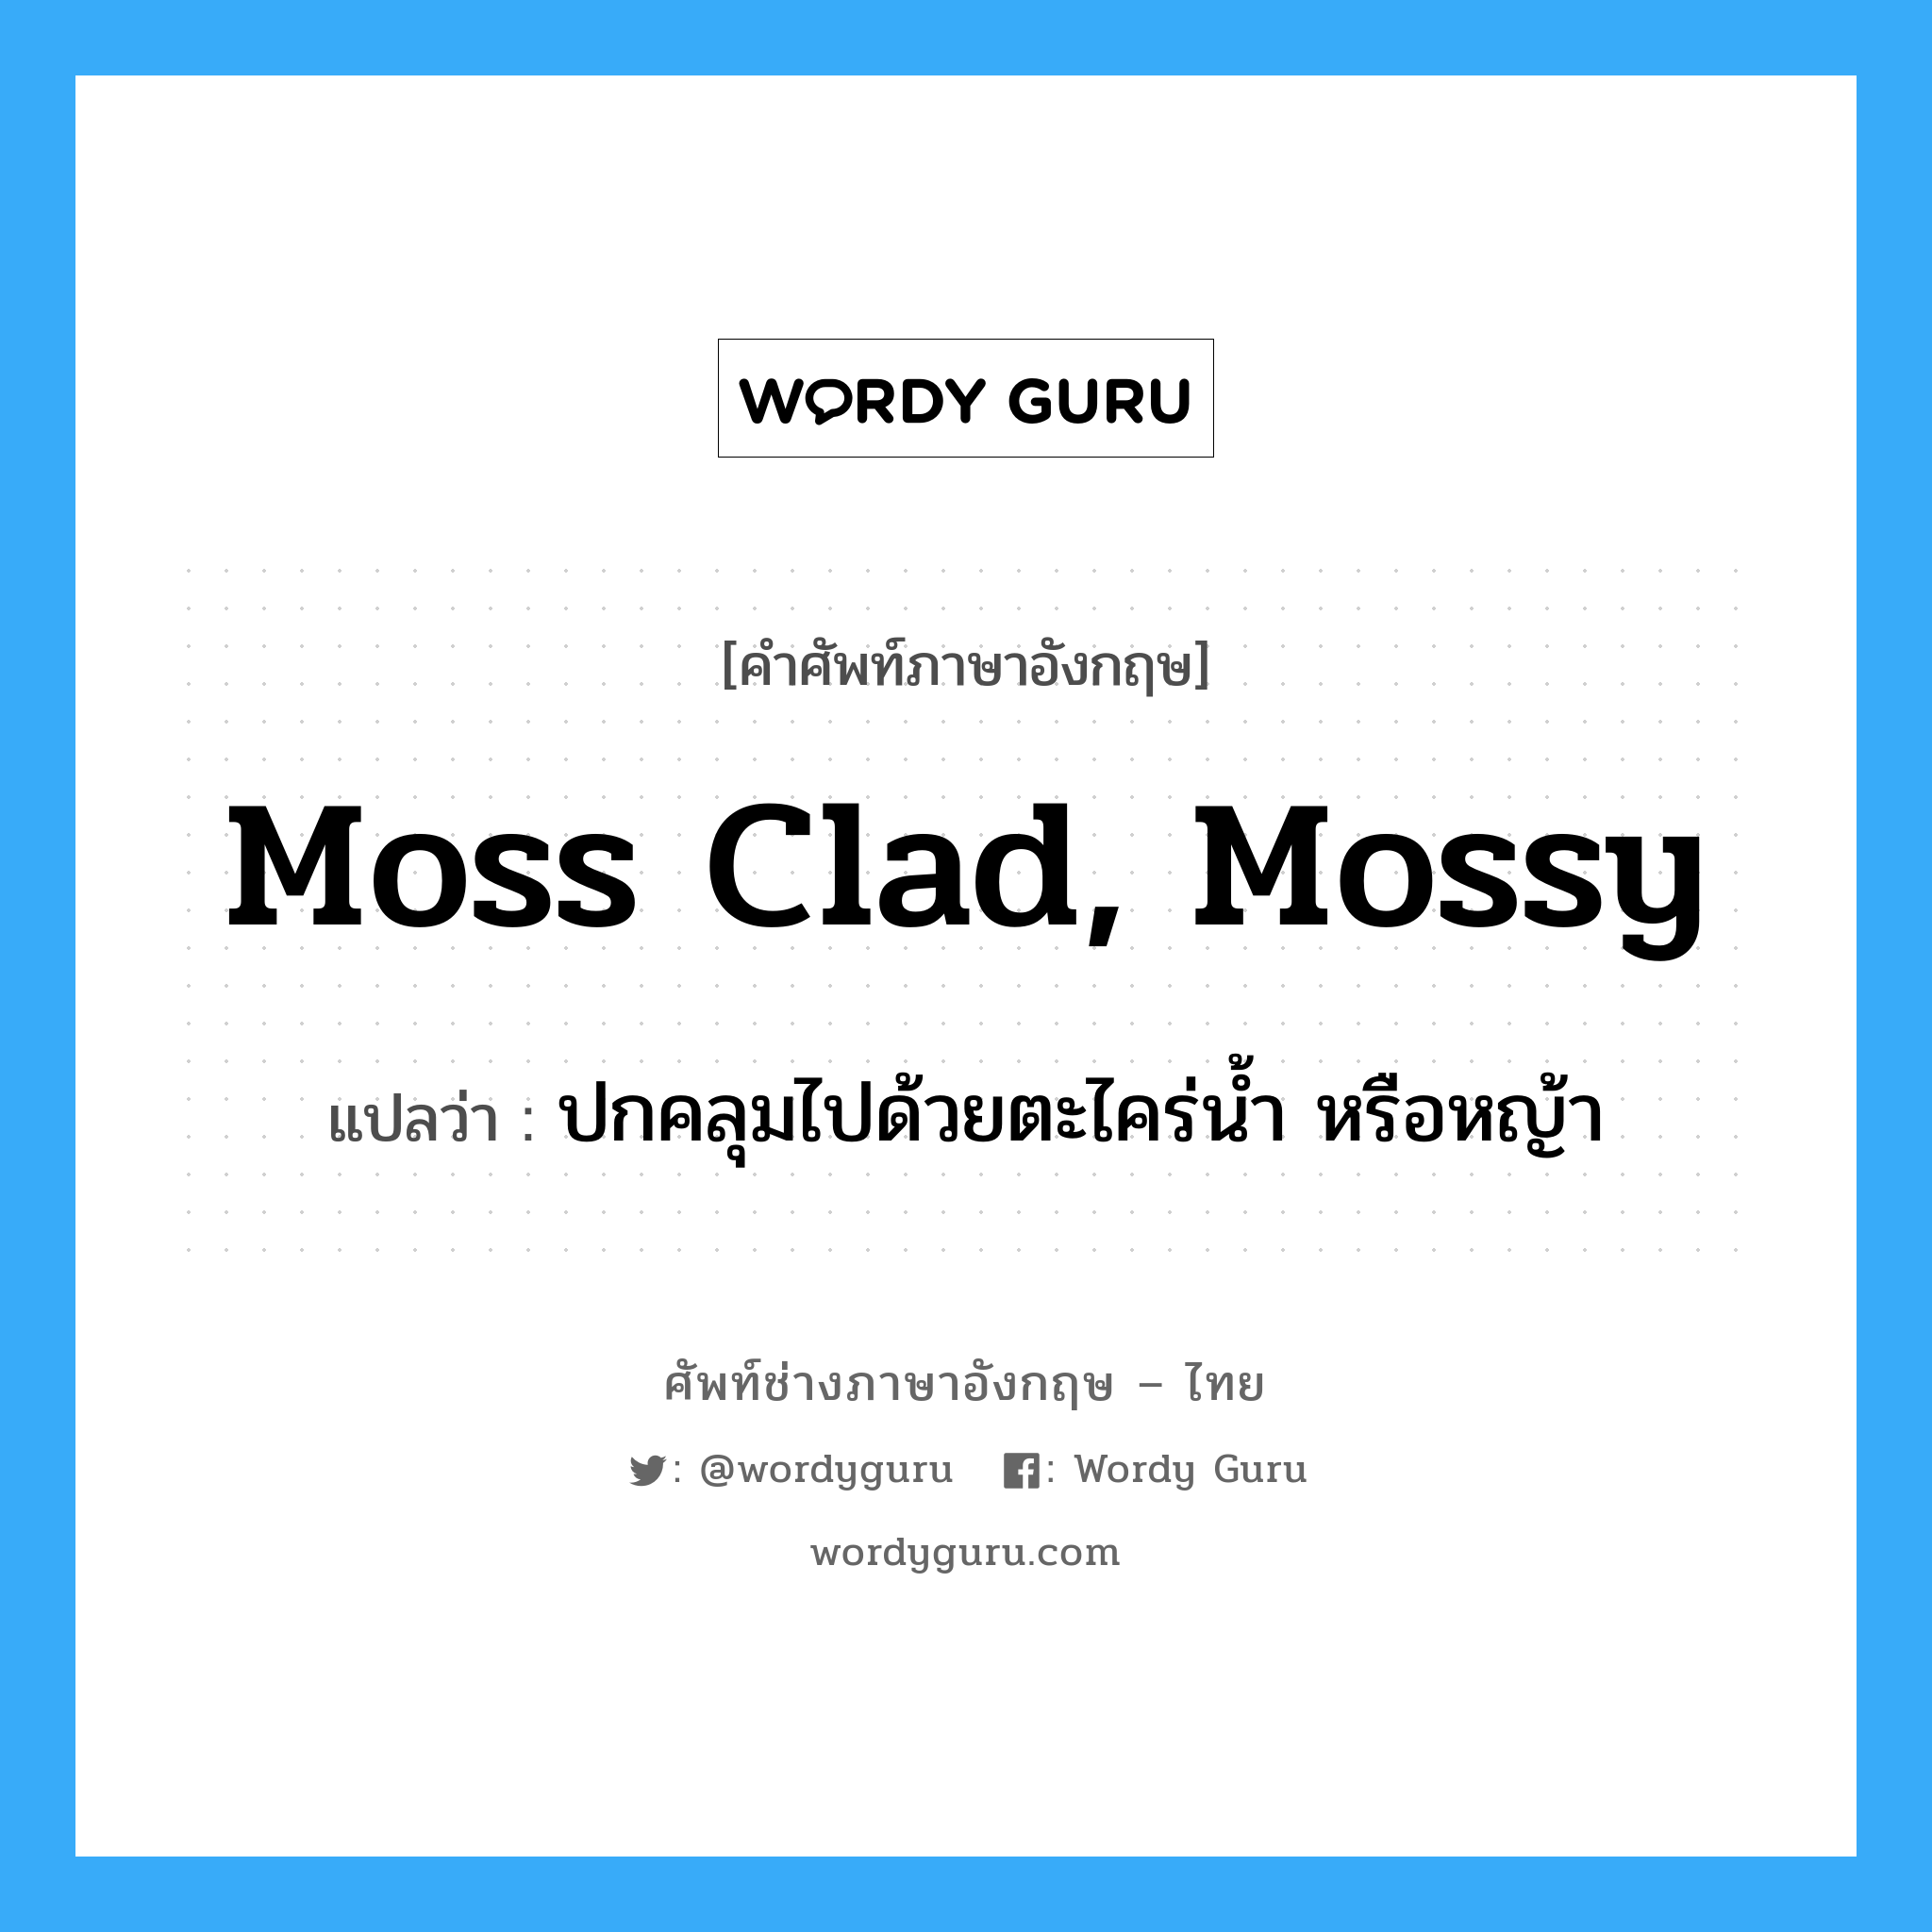 moss clad, mossy แปลว่า?, คำศัพท์ช่างภาษาอังกฤษ - ไทย moss clad, mossy คำศัพท์ภาษาอังกฤษ moss clad, mossy แปลว่า ปกคลุมไปด้วยตะไคร่น้ำ หรือหญ้า